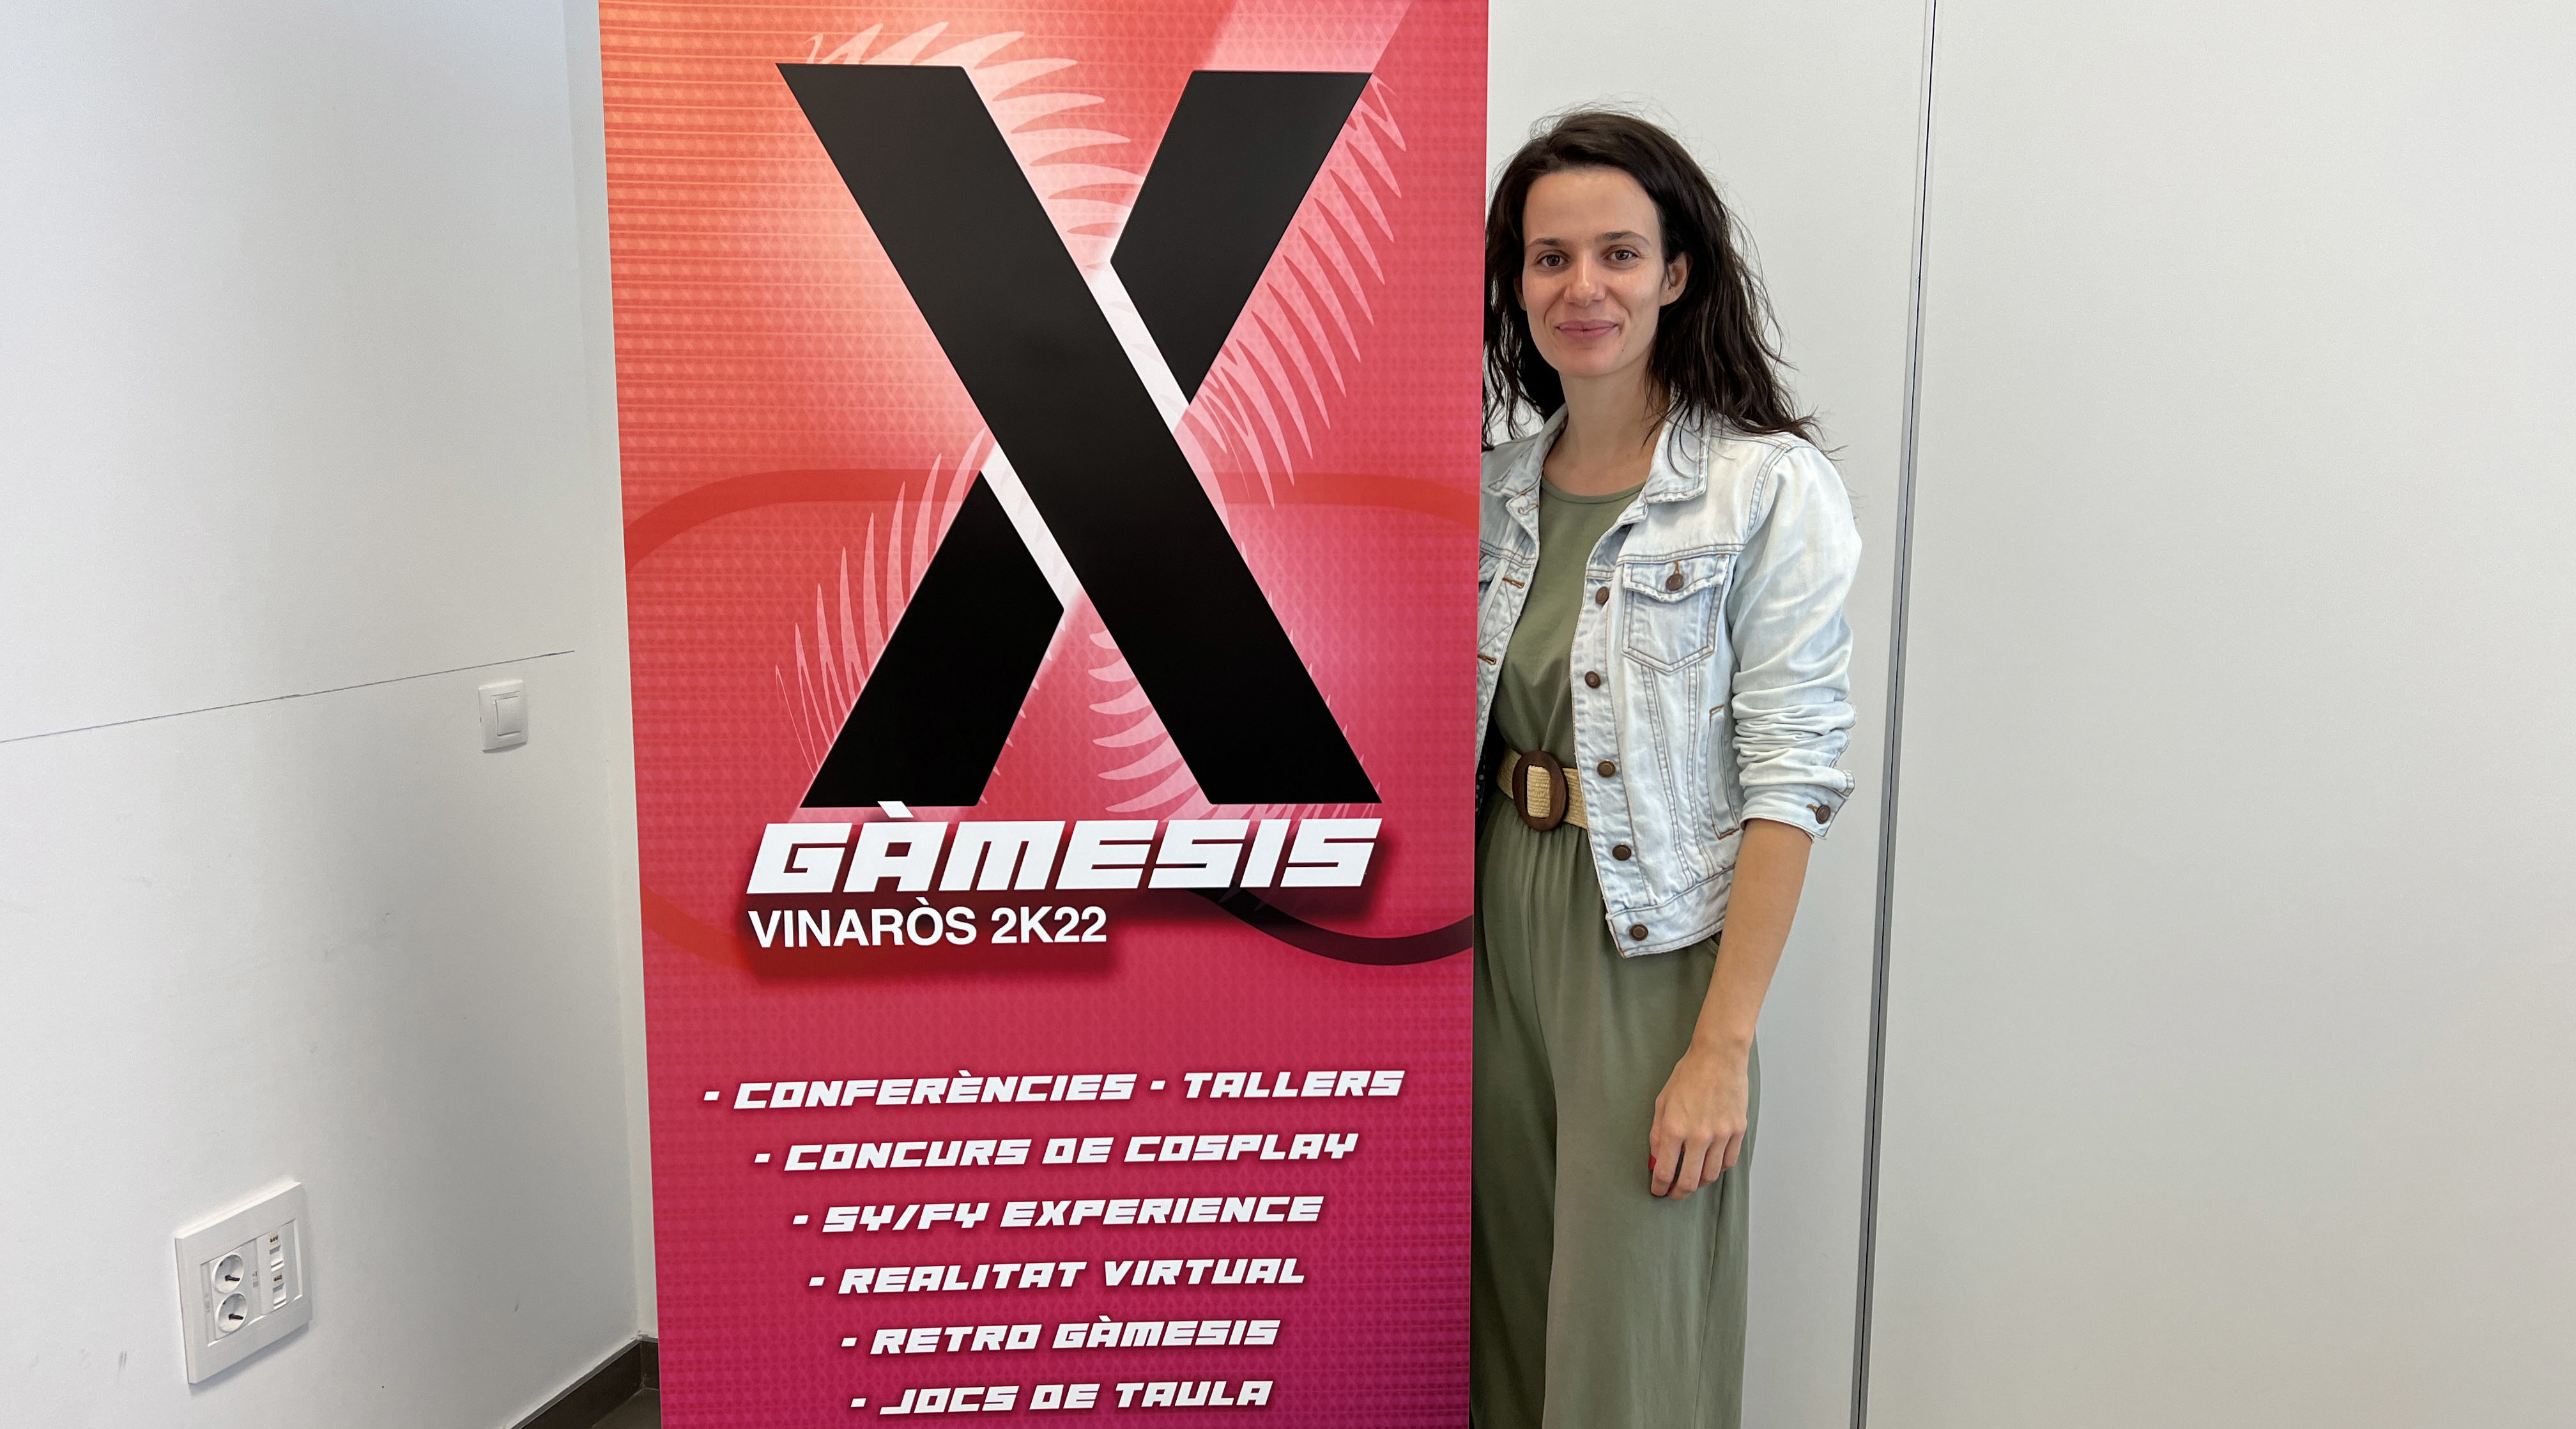 Vinaròs tornarà a ser el referent dels videojocs amb el X Gàmesis